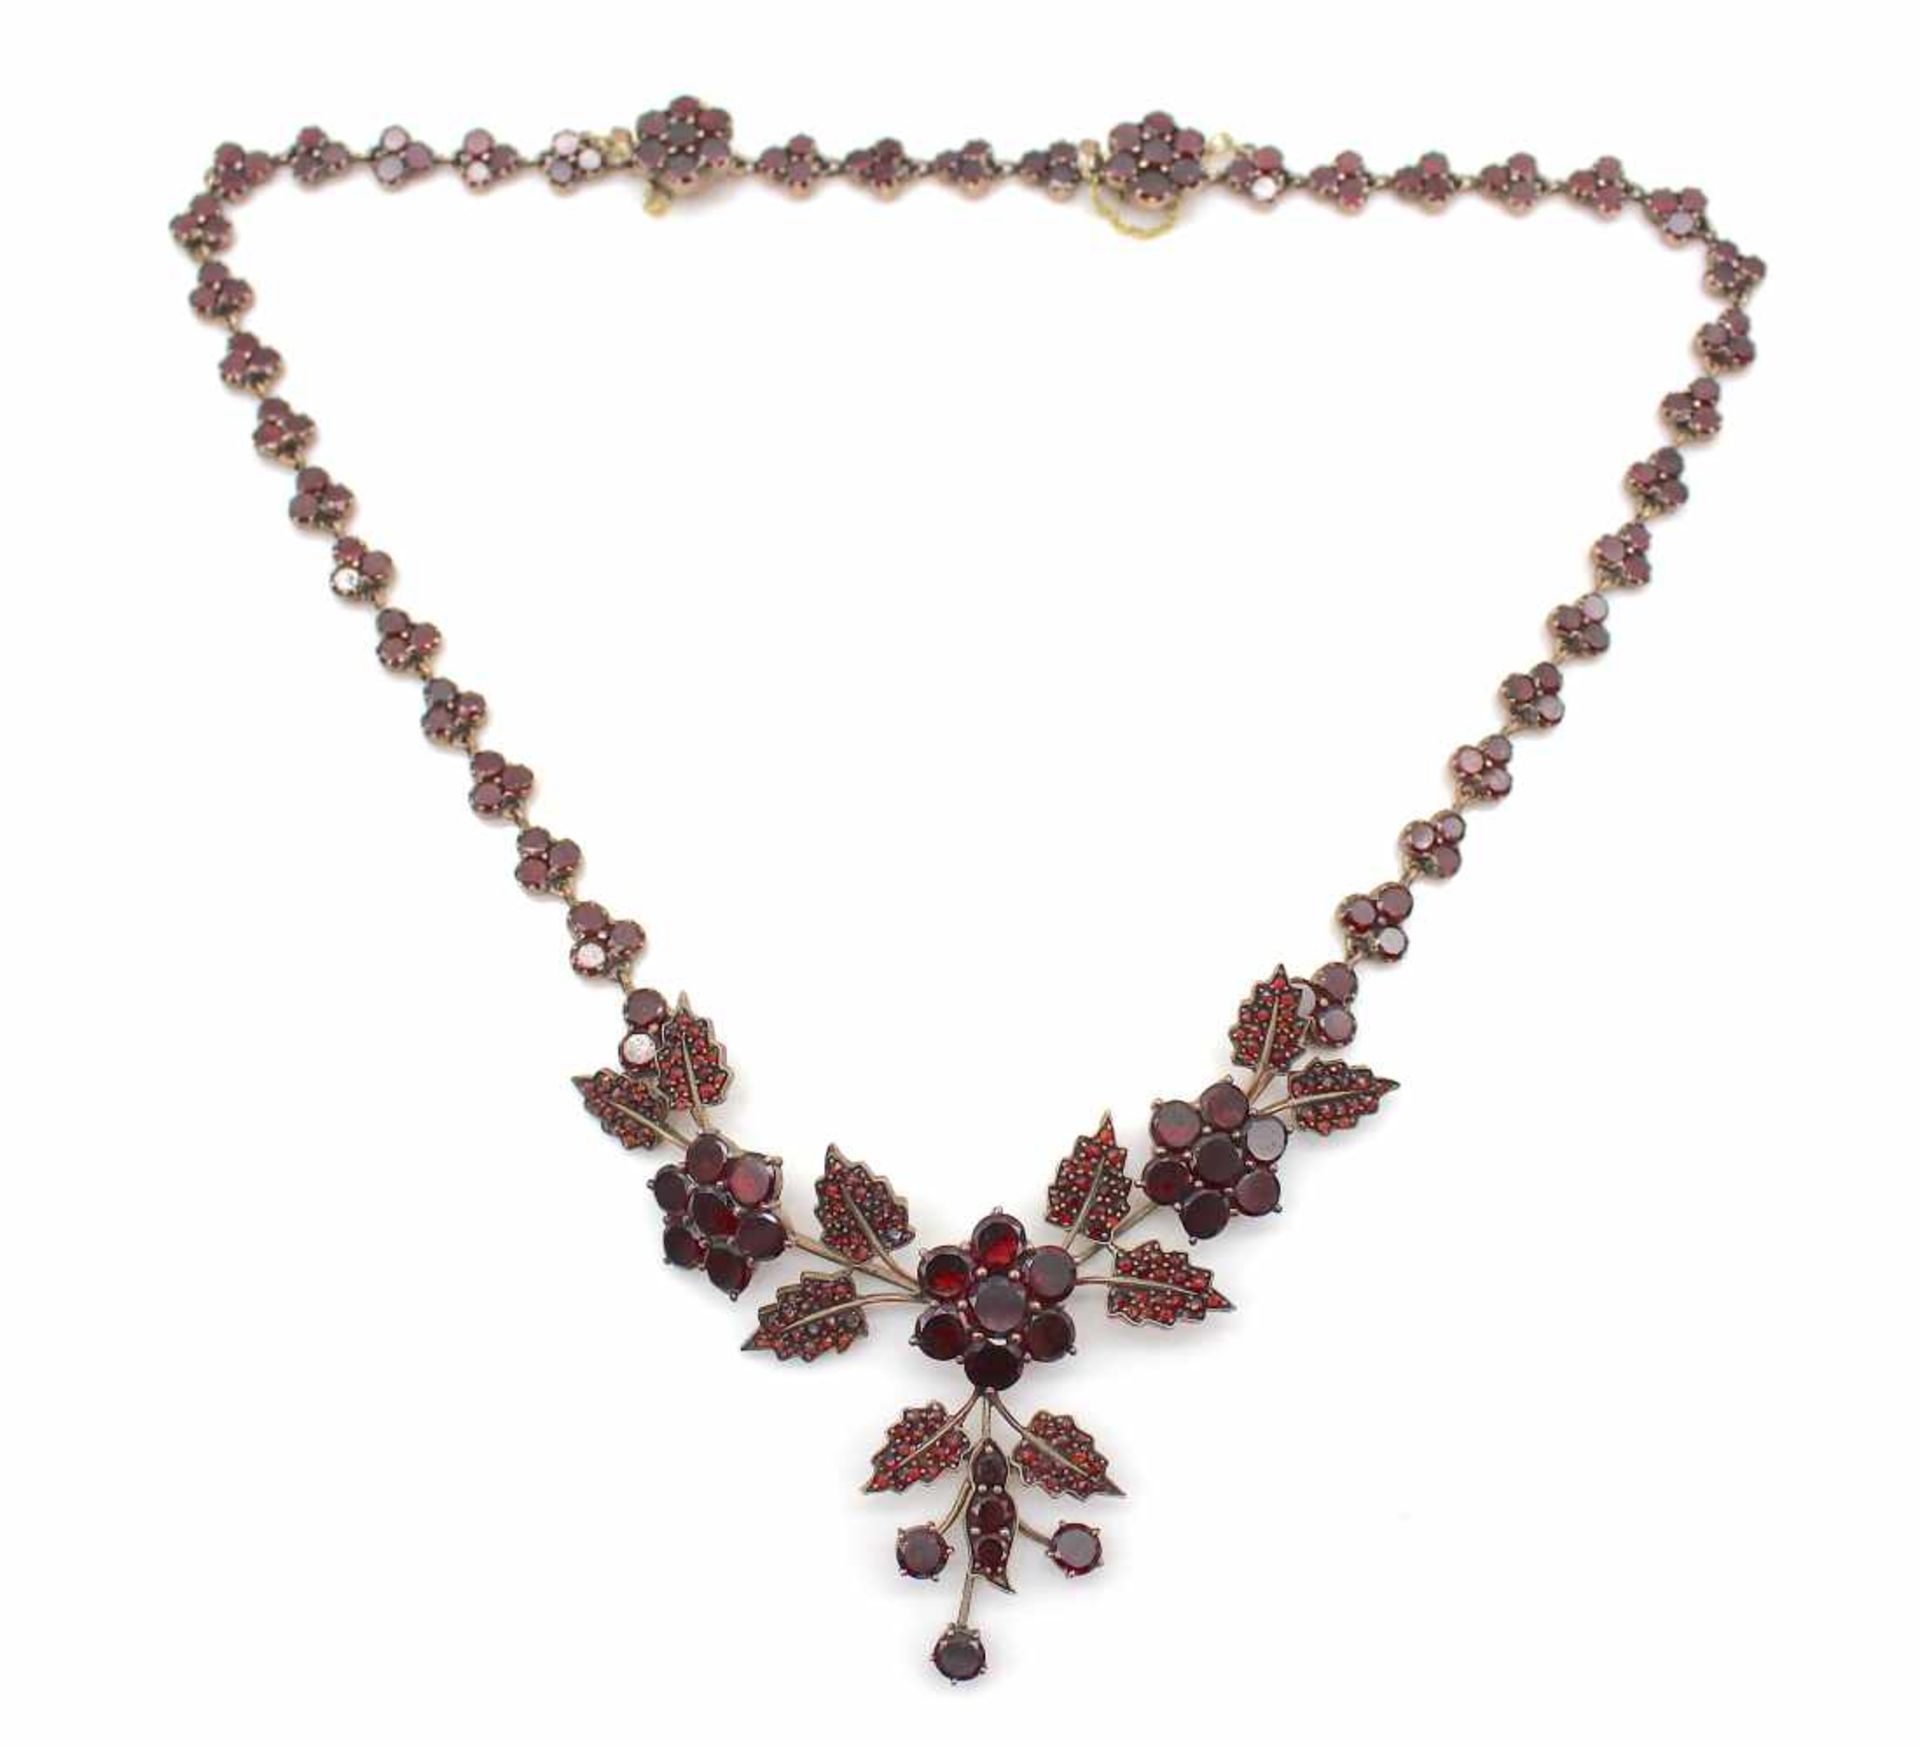 Antique garnet necklace, tombacLength approx. 43 cmAntikes Granatcollier, TombakLänge ca. 43 cm - Bild 3 aus 4